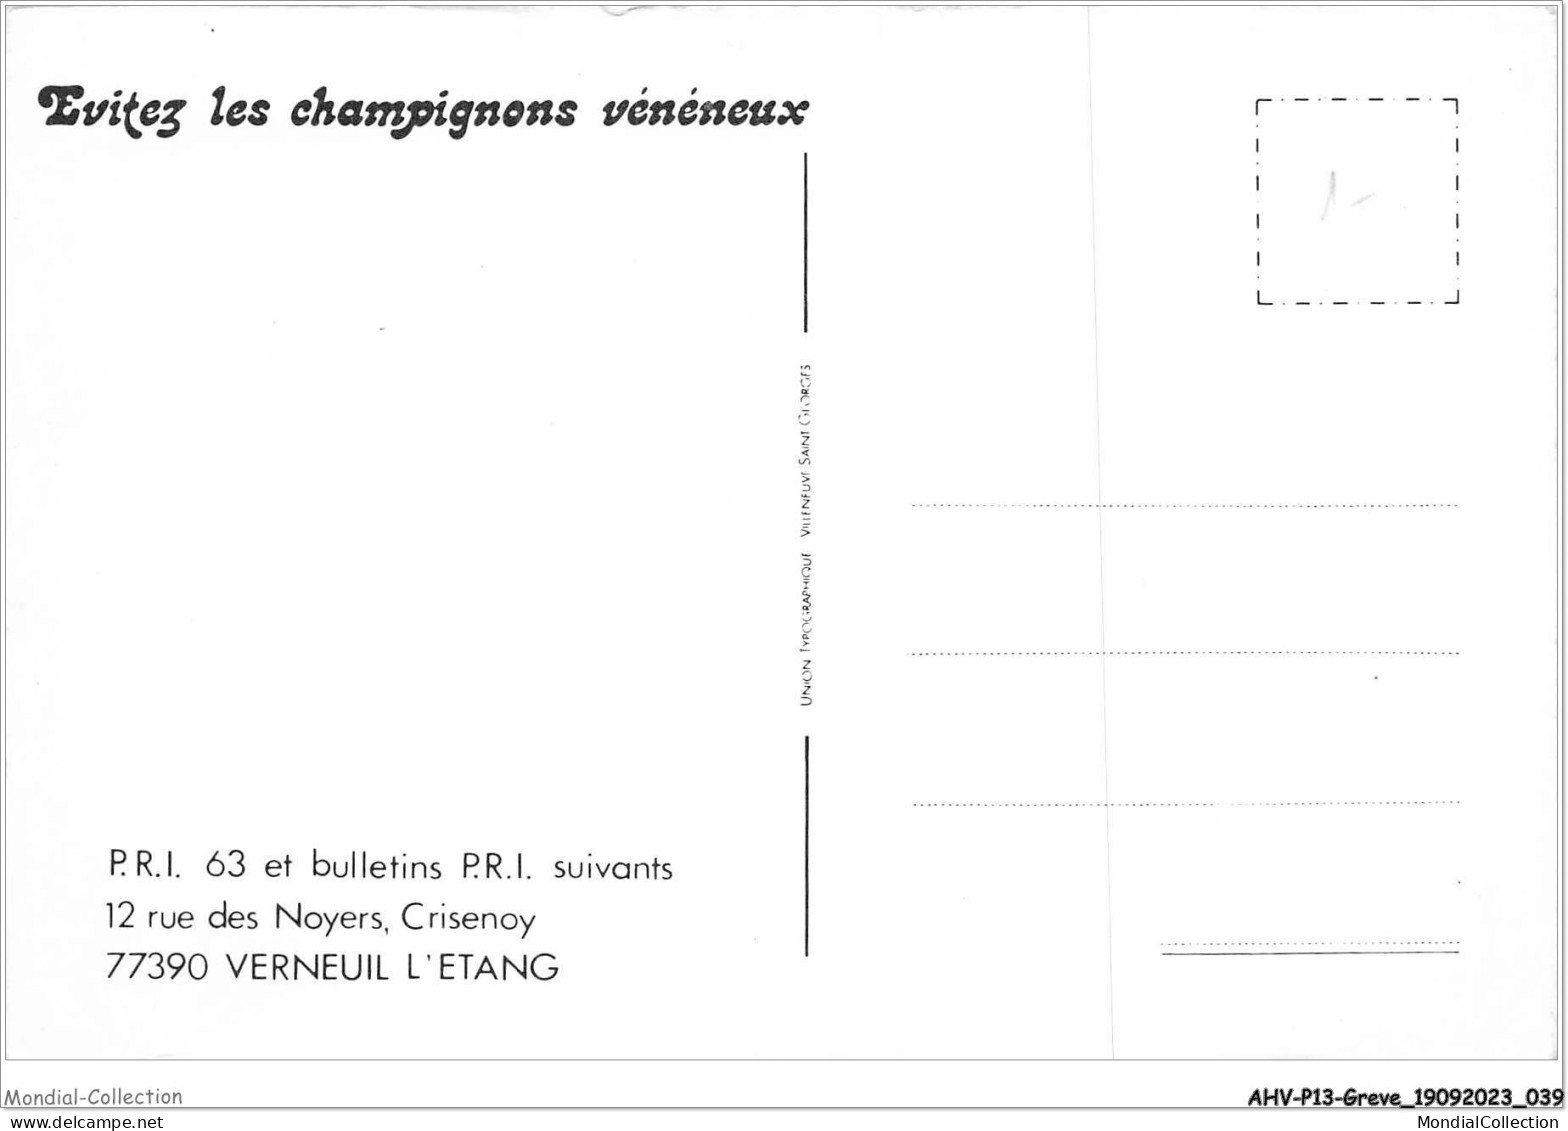 AHVP13-1133 - GREVE - Evitez Les Champignons Vénéneux  - Huelga